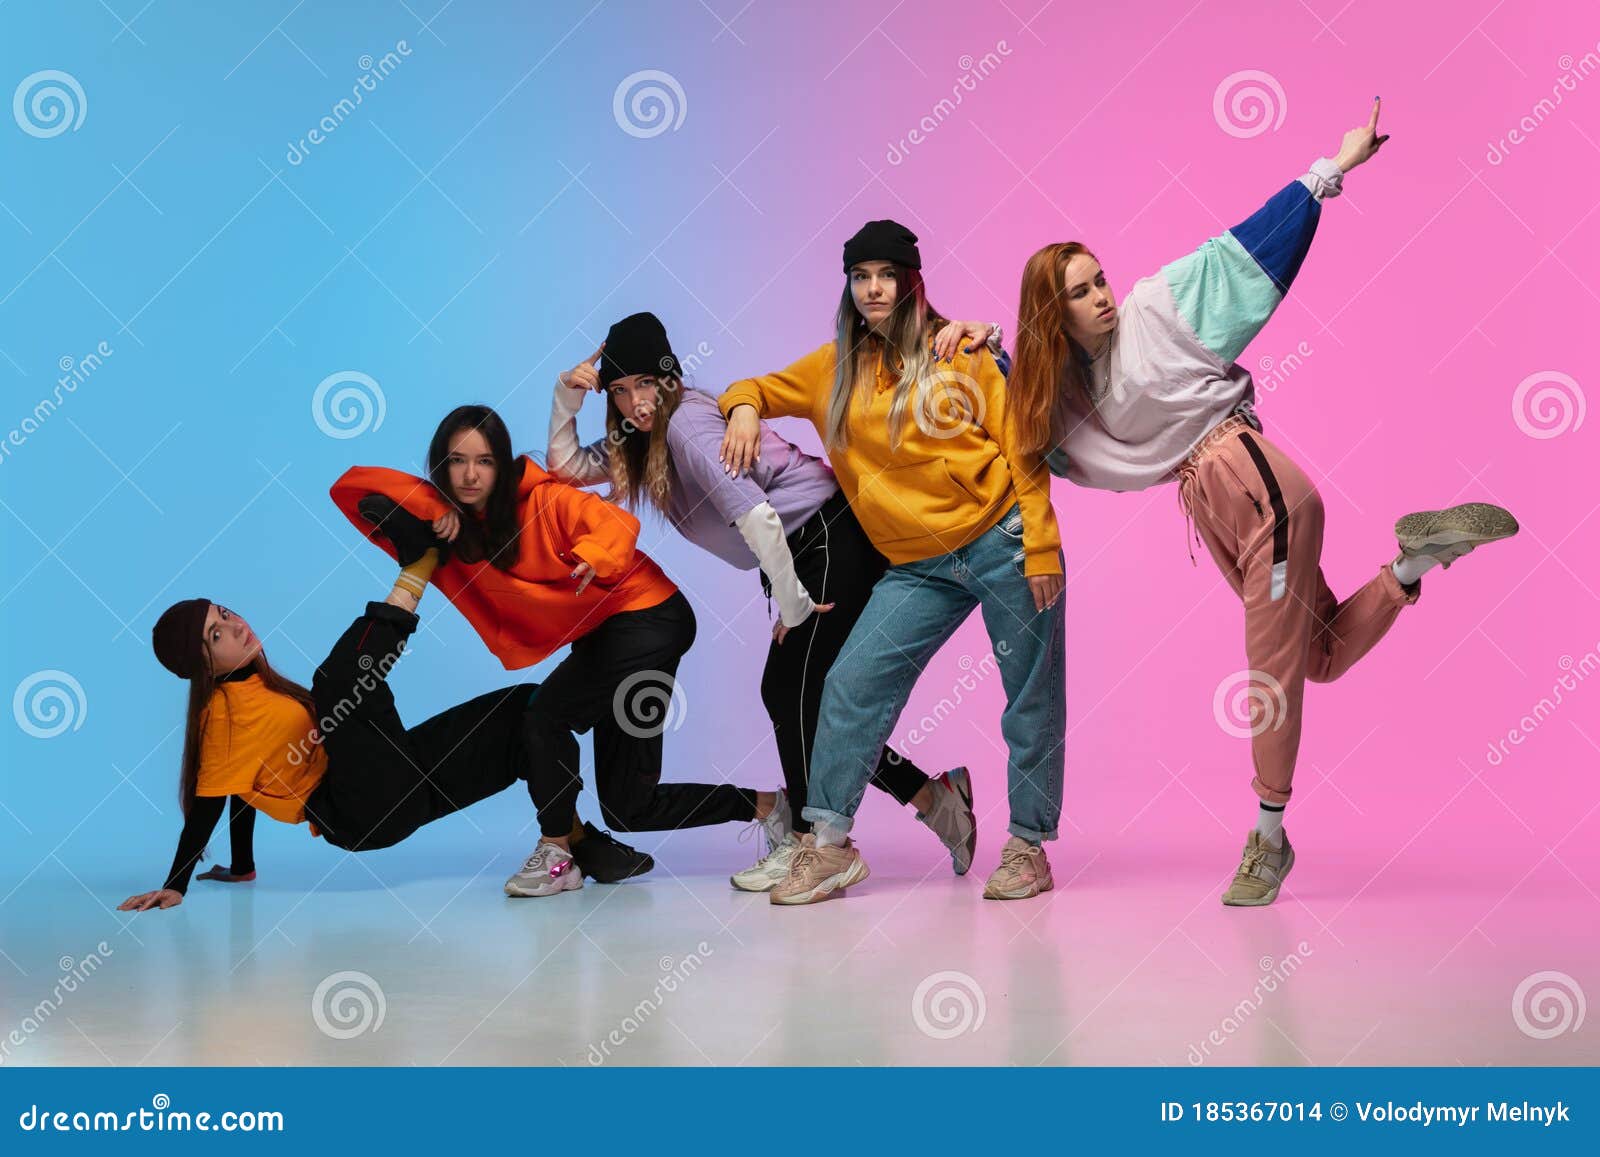 Grupo Bailarines Niños Y Niñas Hiphop Con Ropa Elegante En El Fondo De Estudio De Gradiente En Luz De Neón. Foto de archivo - Imagen de fondo: 185367014